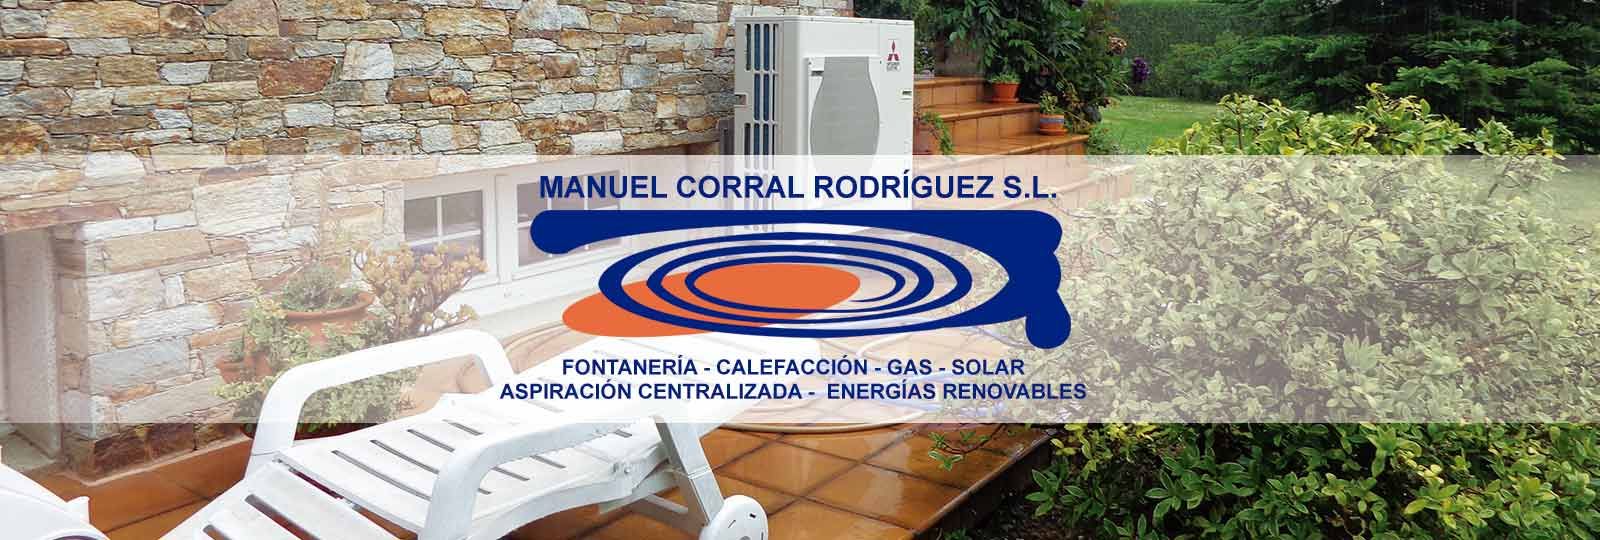 MANUEL CORRAL RODRIGUEZ S.L.